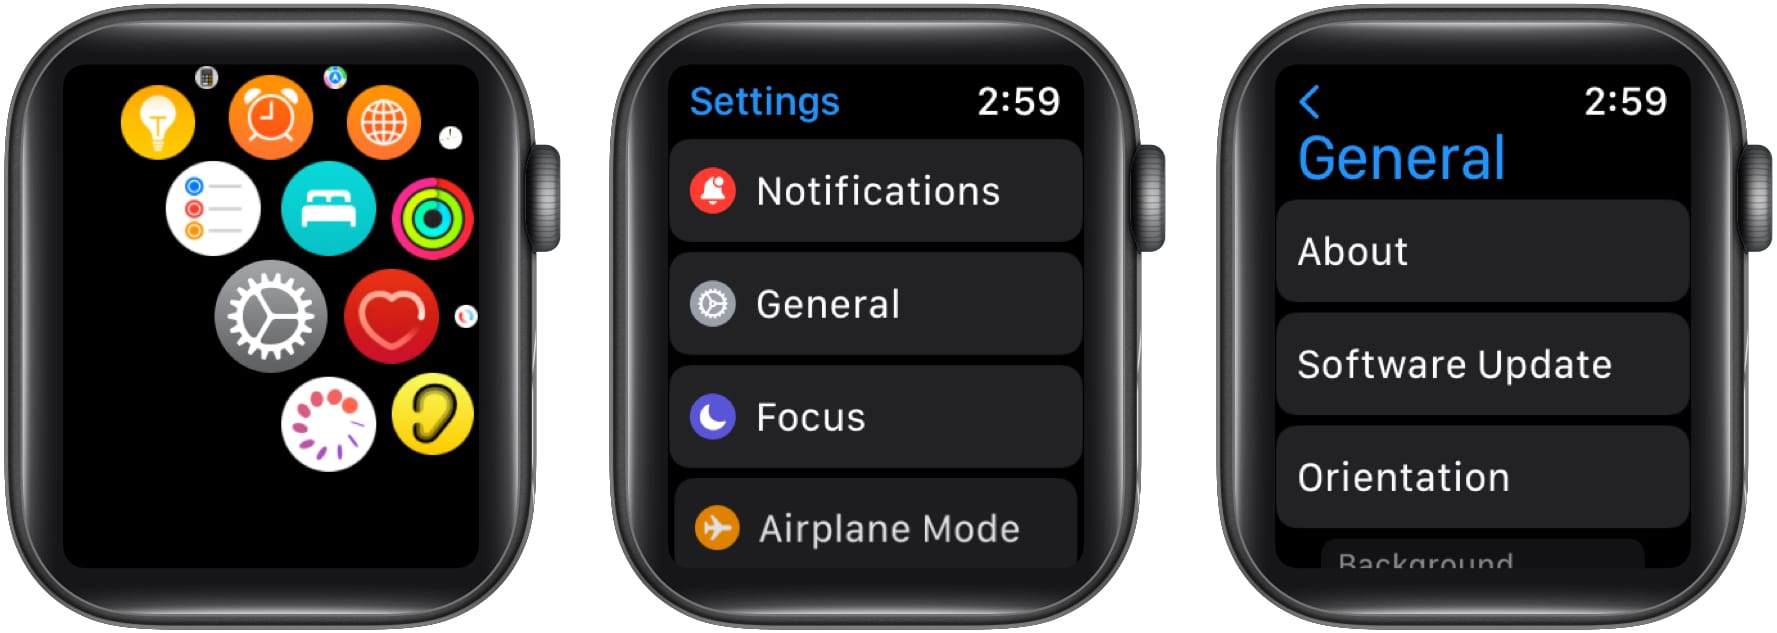 Choisissez Mise à jour logicielle dans les paramètres généraux d'Apple Watch